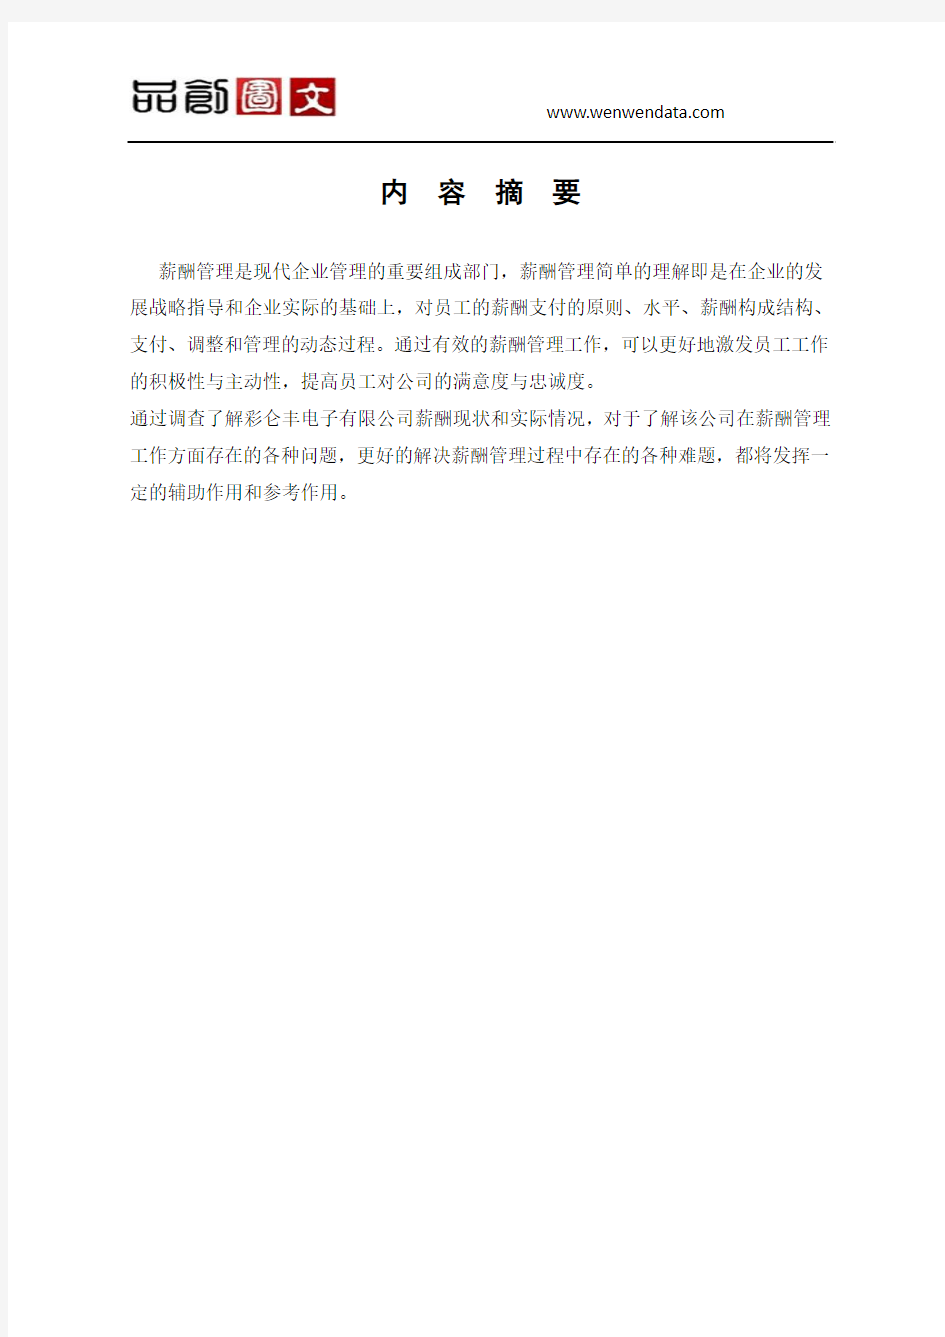 关于上海彩仑丰电子有限公司薪酬管理工作的分析报告-毕业论文